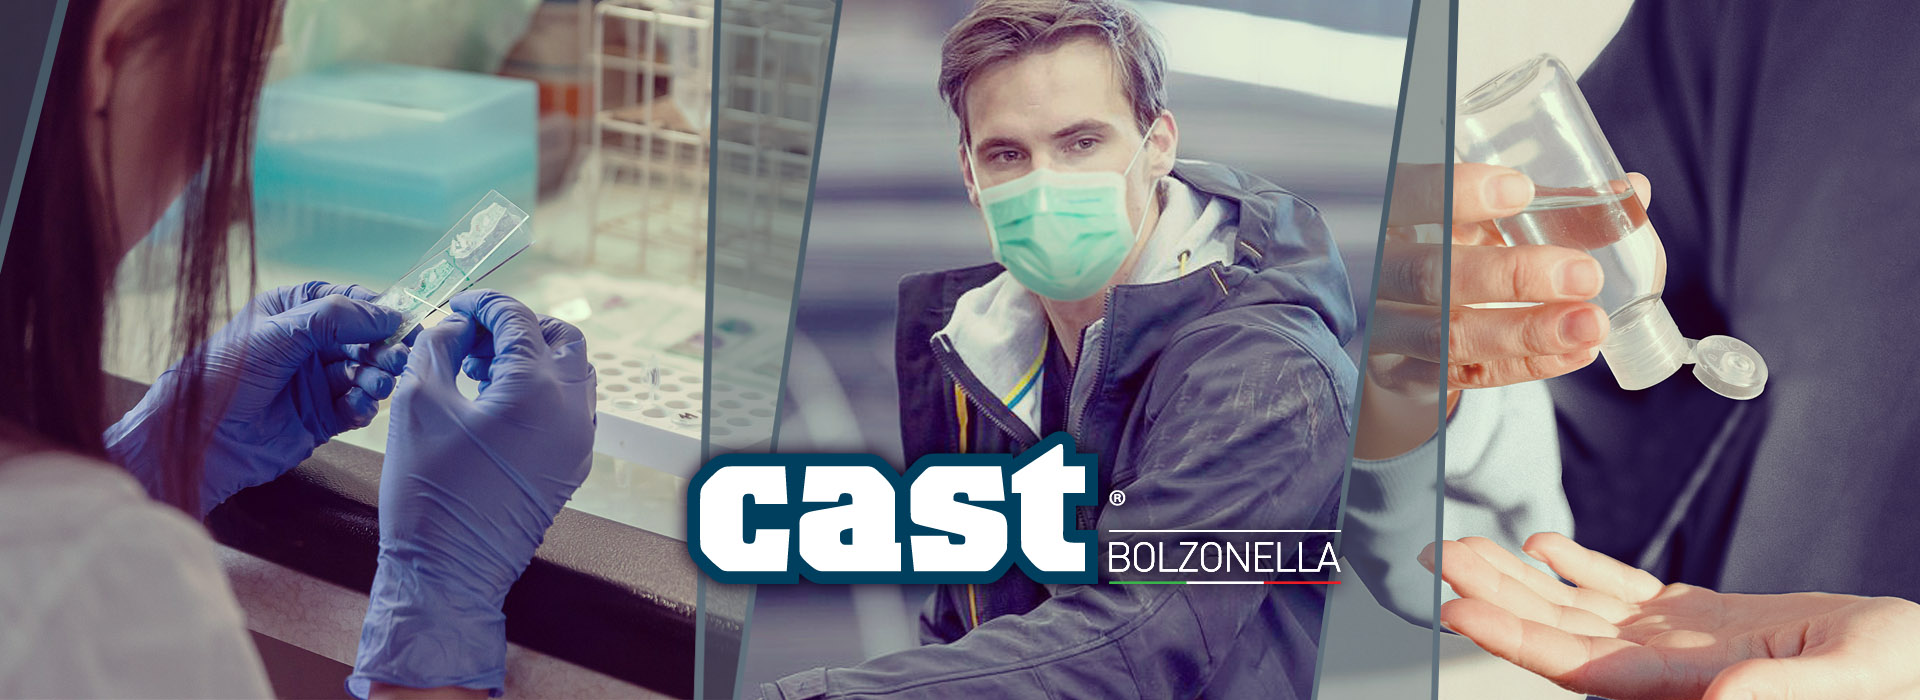 EN149:2001+A1:2009 for FFP2 masks | Cast Bolzonella